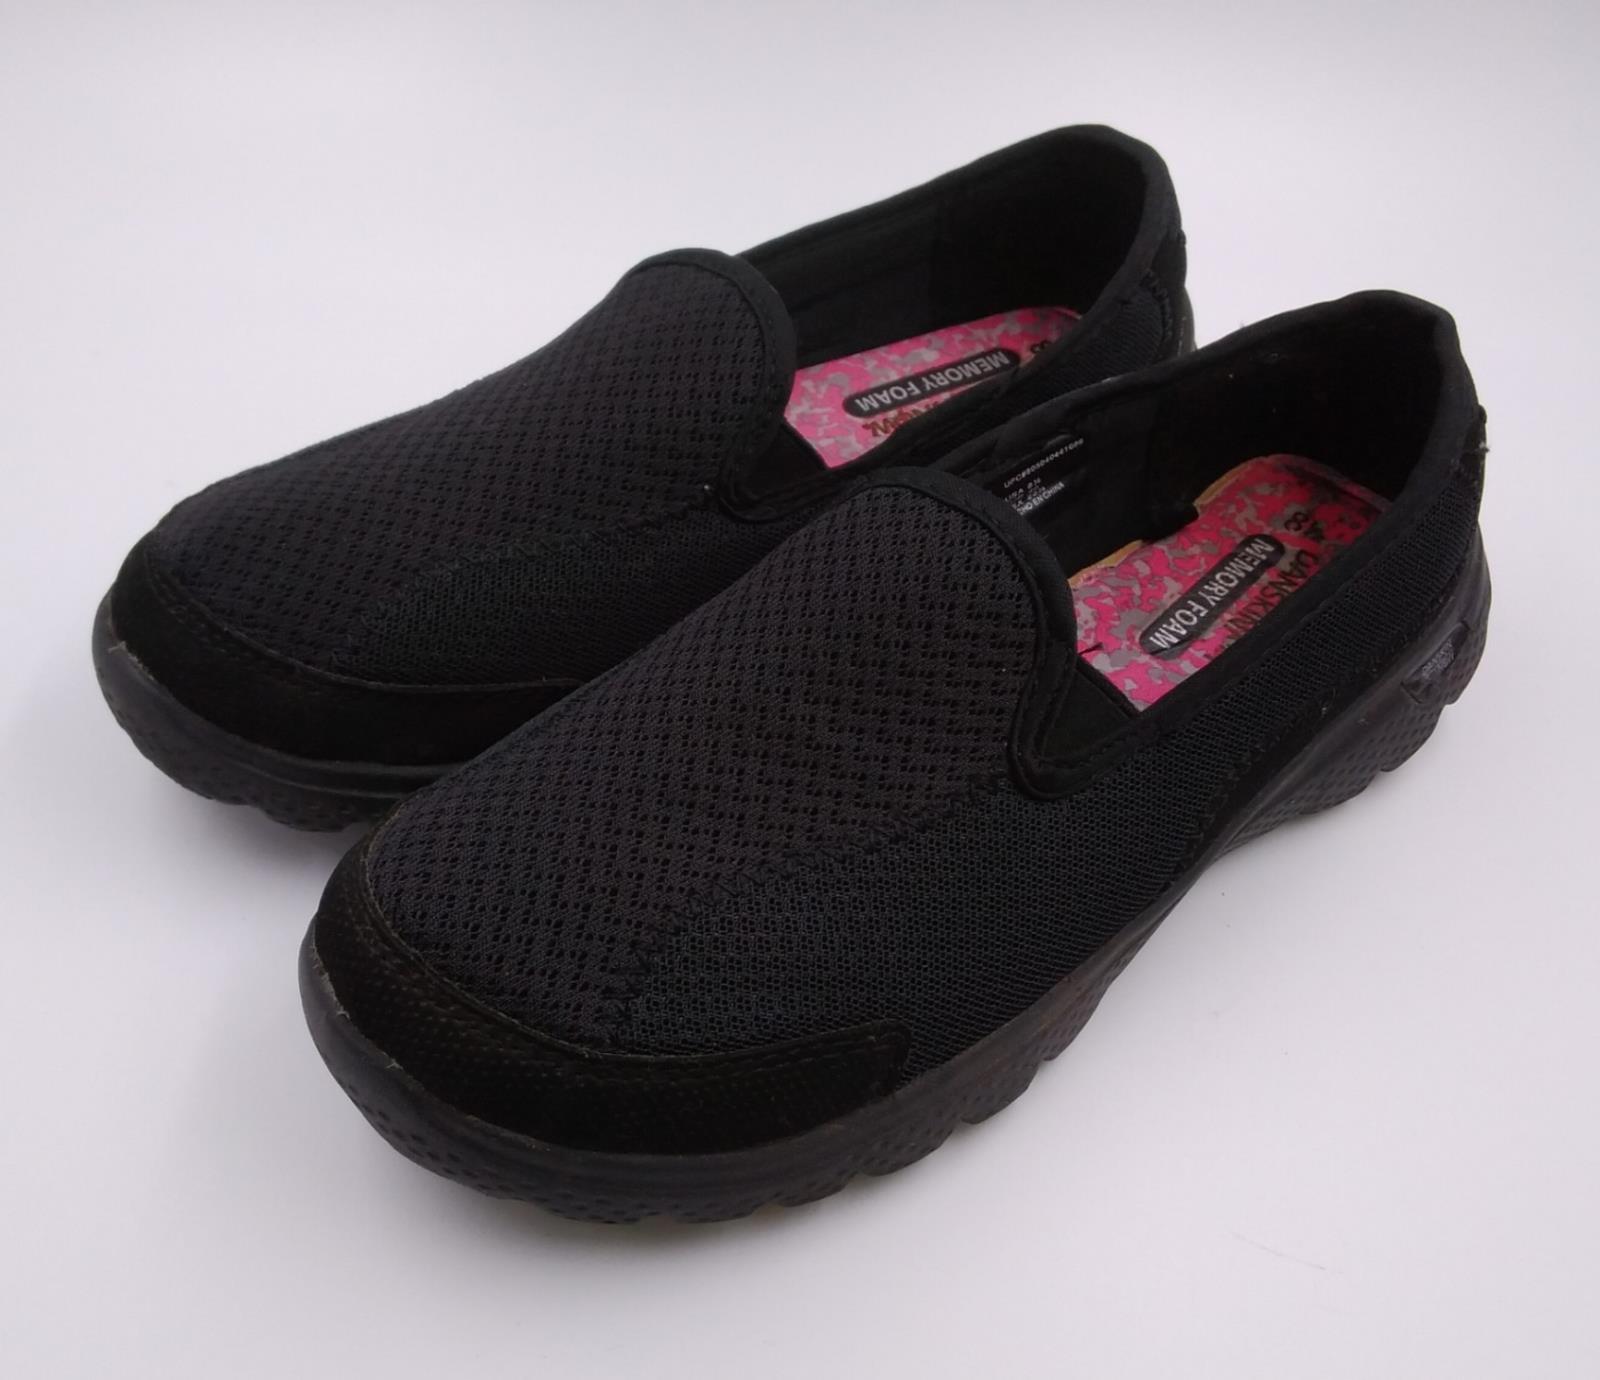 Danskin Now Womens Black Slip On Memory Foam Athletic Shoes Size 8.5 | eBay